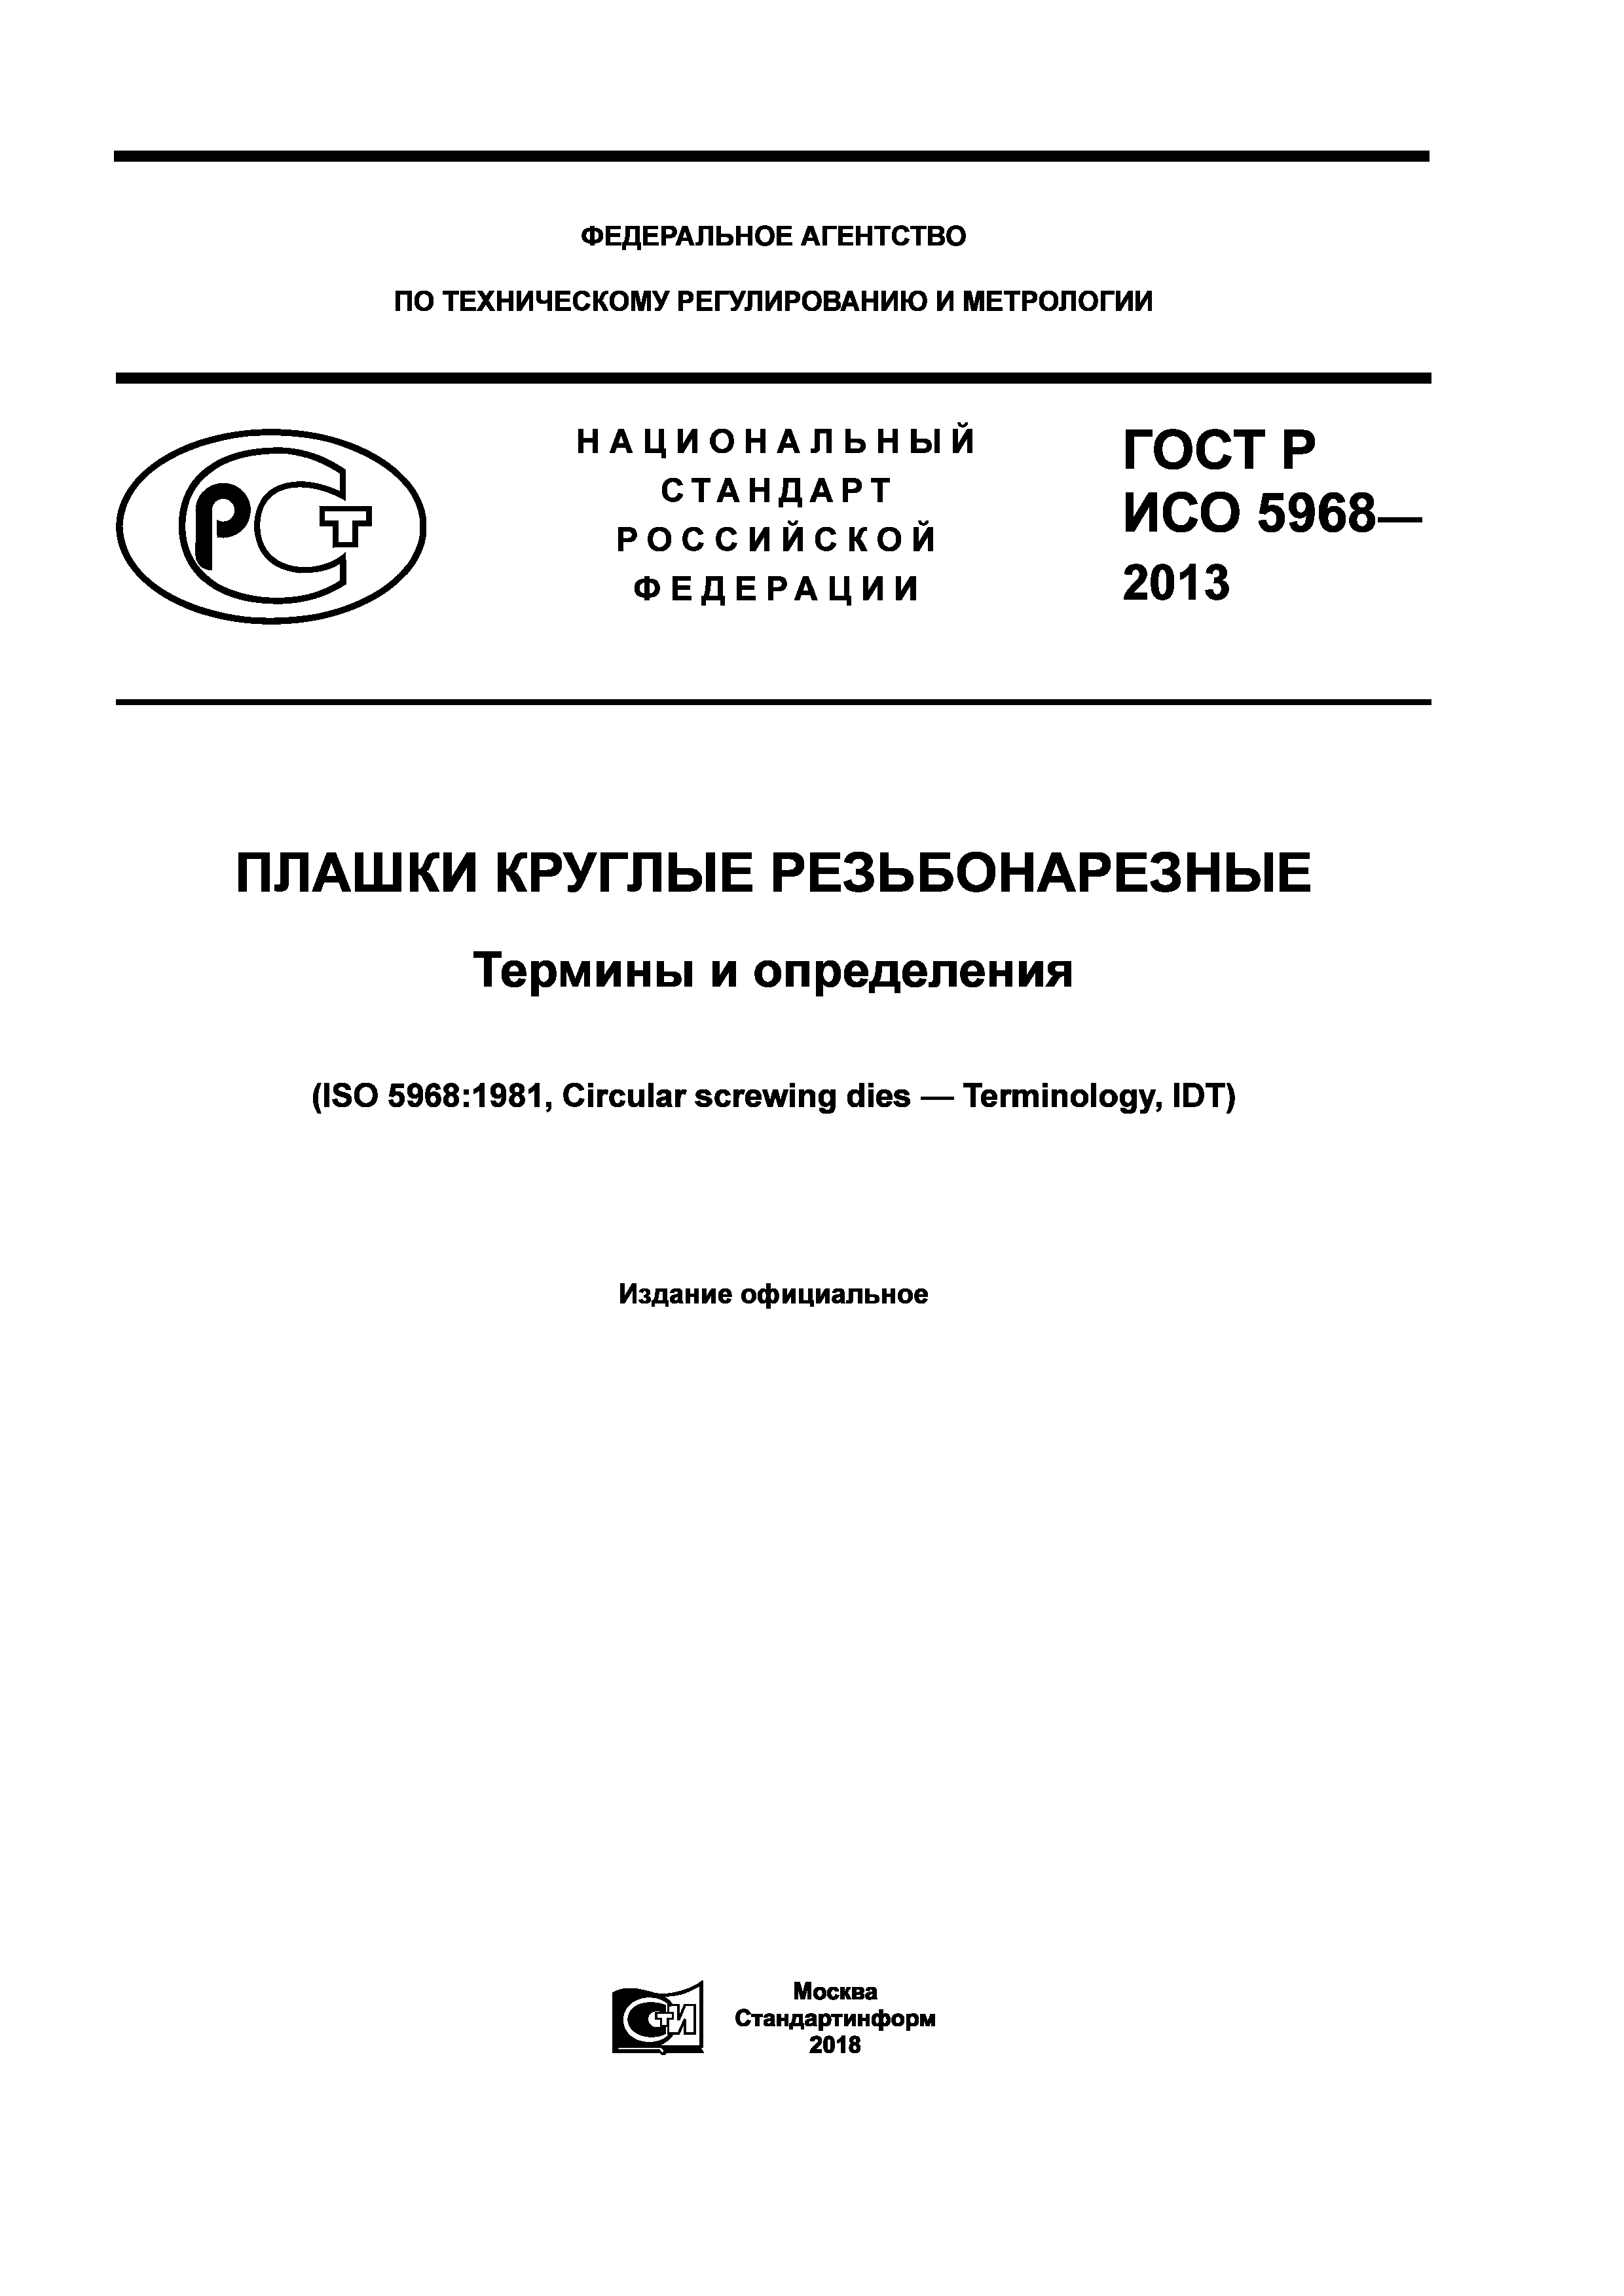 ГОСТ Р ИСО 5968-2013